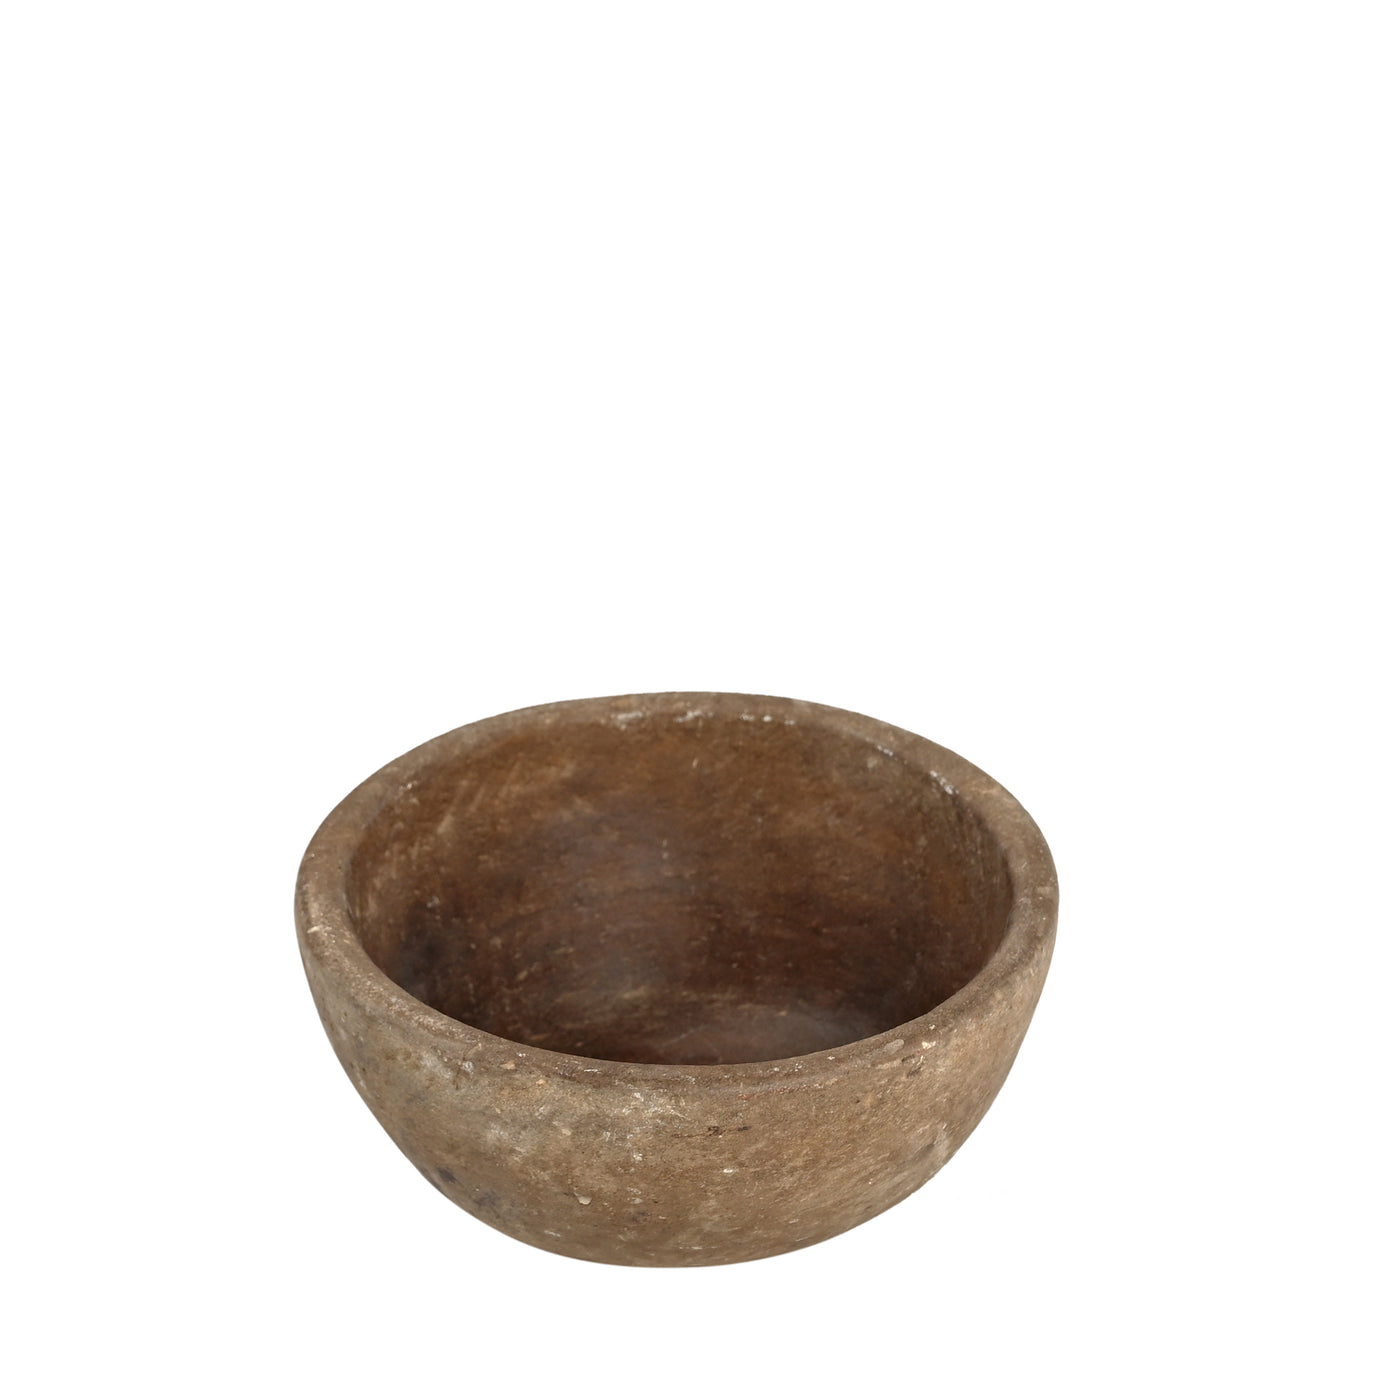 Devliya - Stone bowl n ° 4